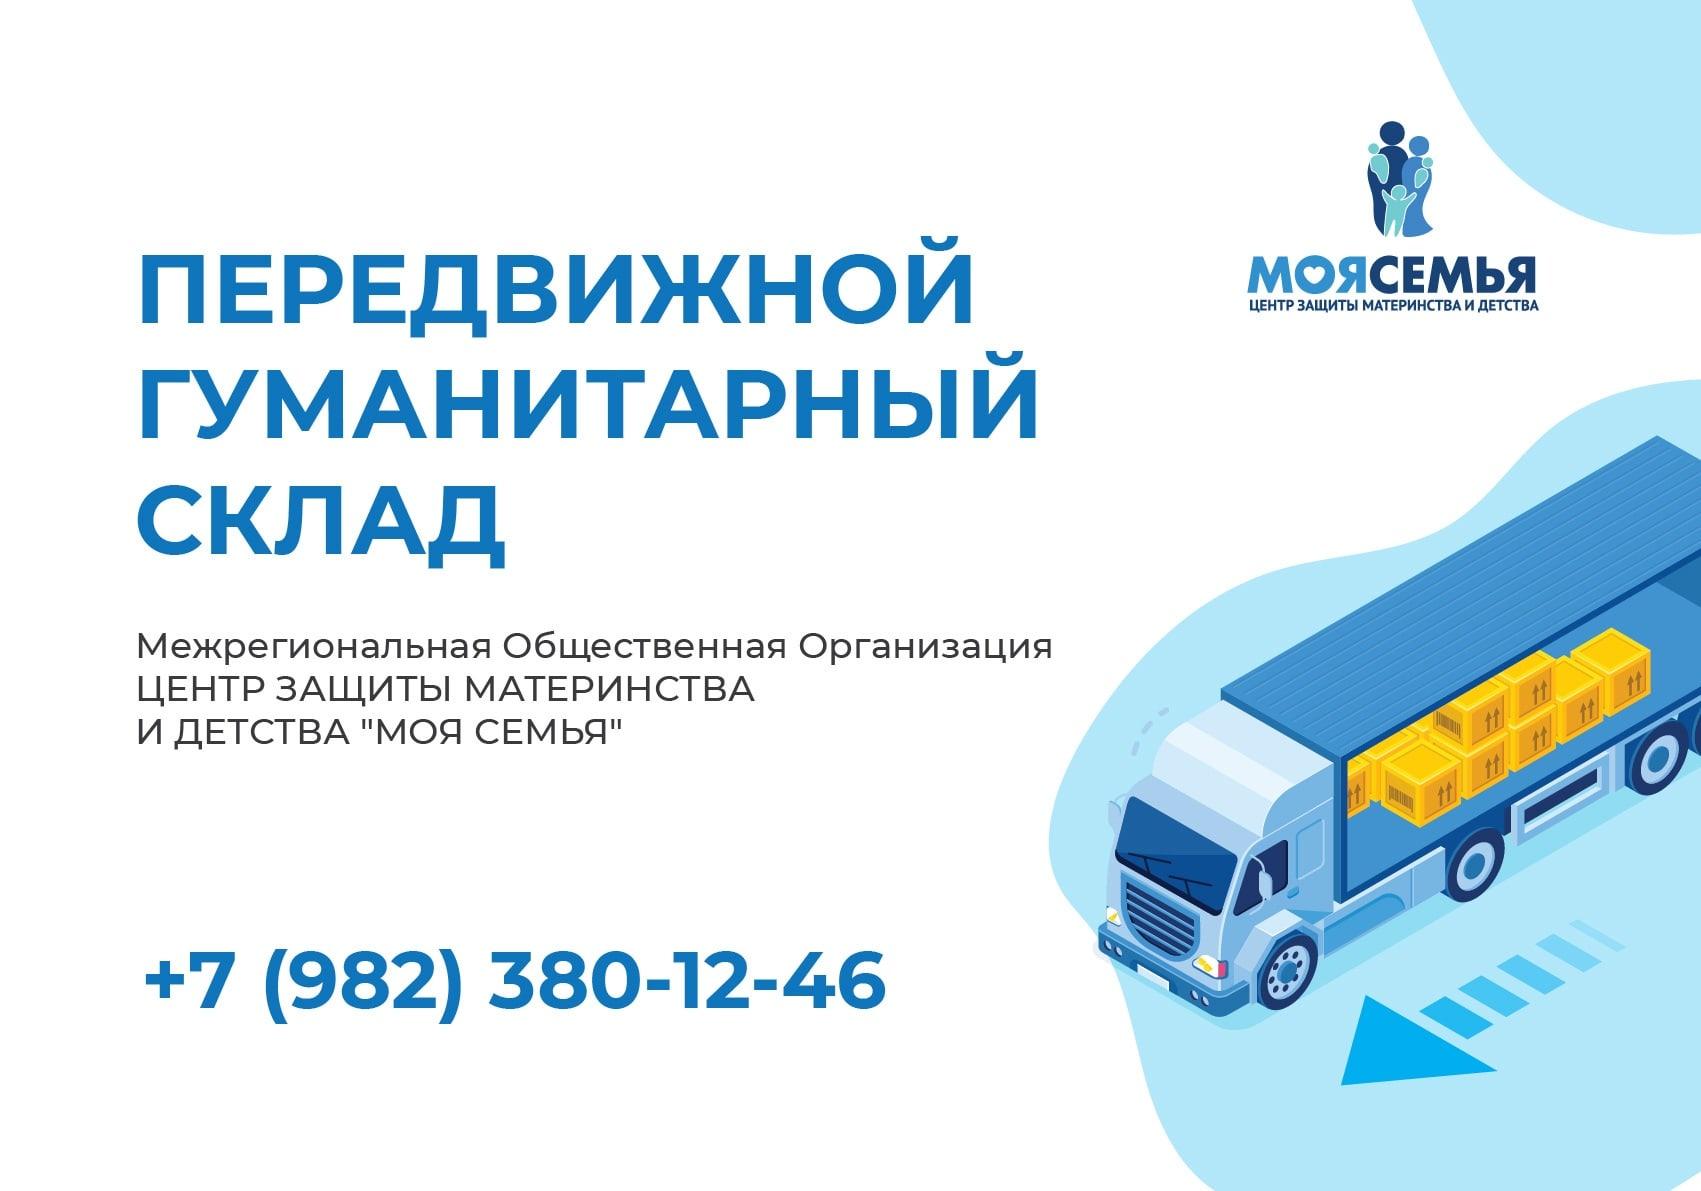 В рамках акции Передвижной Гуманитарный склад продуктовую помощь в мае получили еще 63 семьи из города Кирова, Слободского, Оричей, Шабалино и близлежащих населенных пунктов